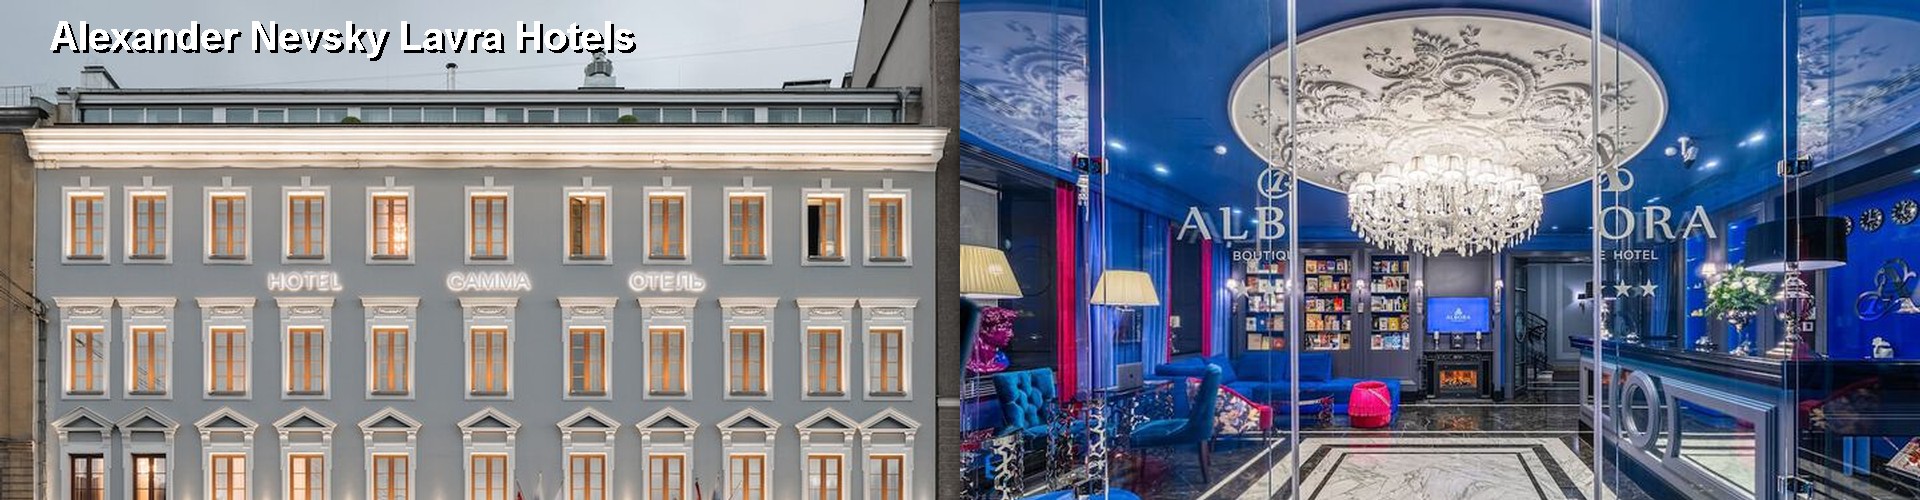 5 Best Hotels near Alexander Nevsky Lavra